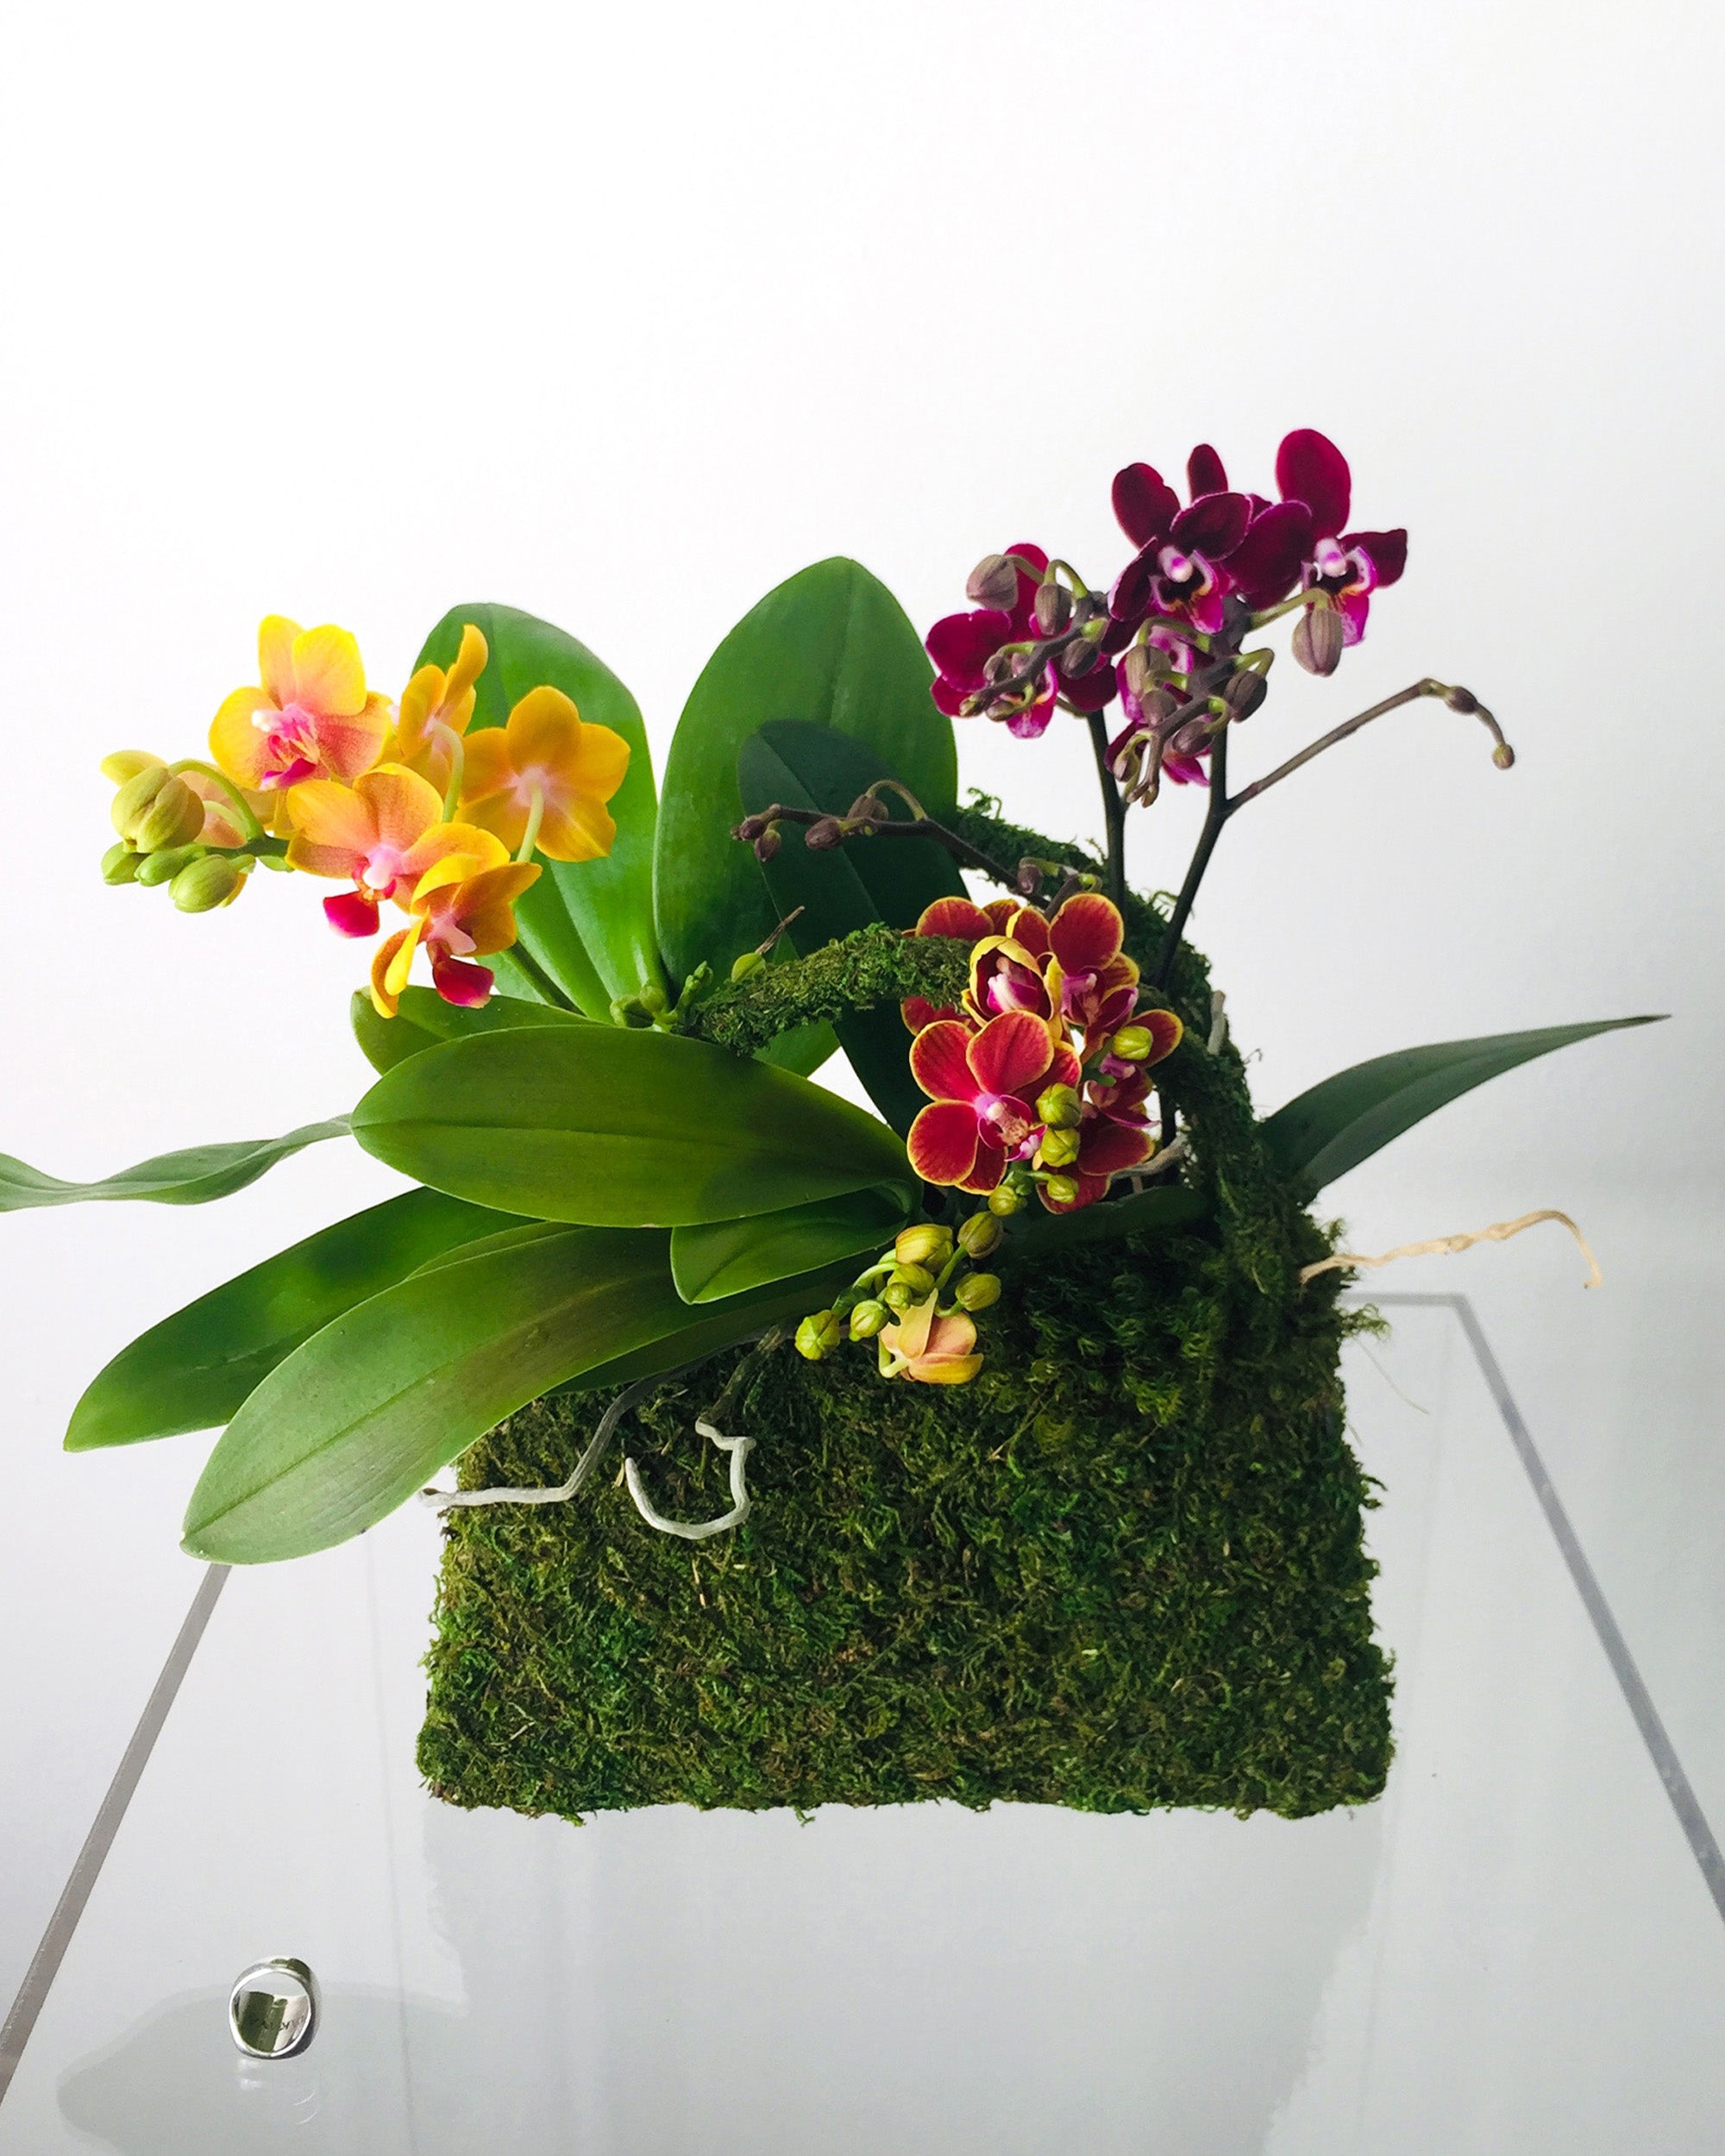 A moss purse with a botanical flower arrangement inside, featuring orchids.